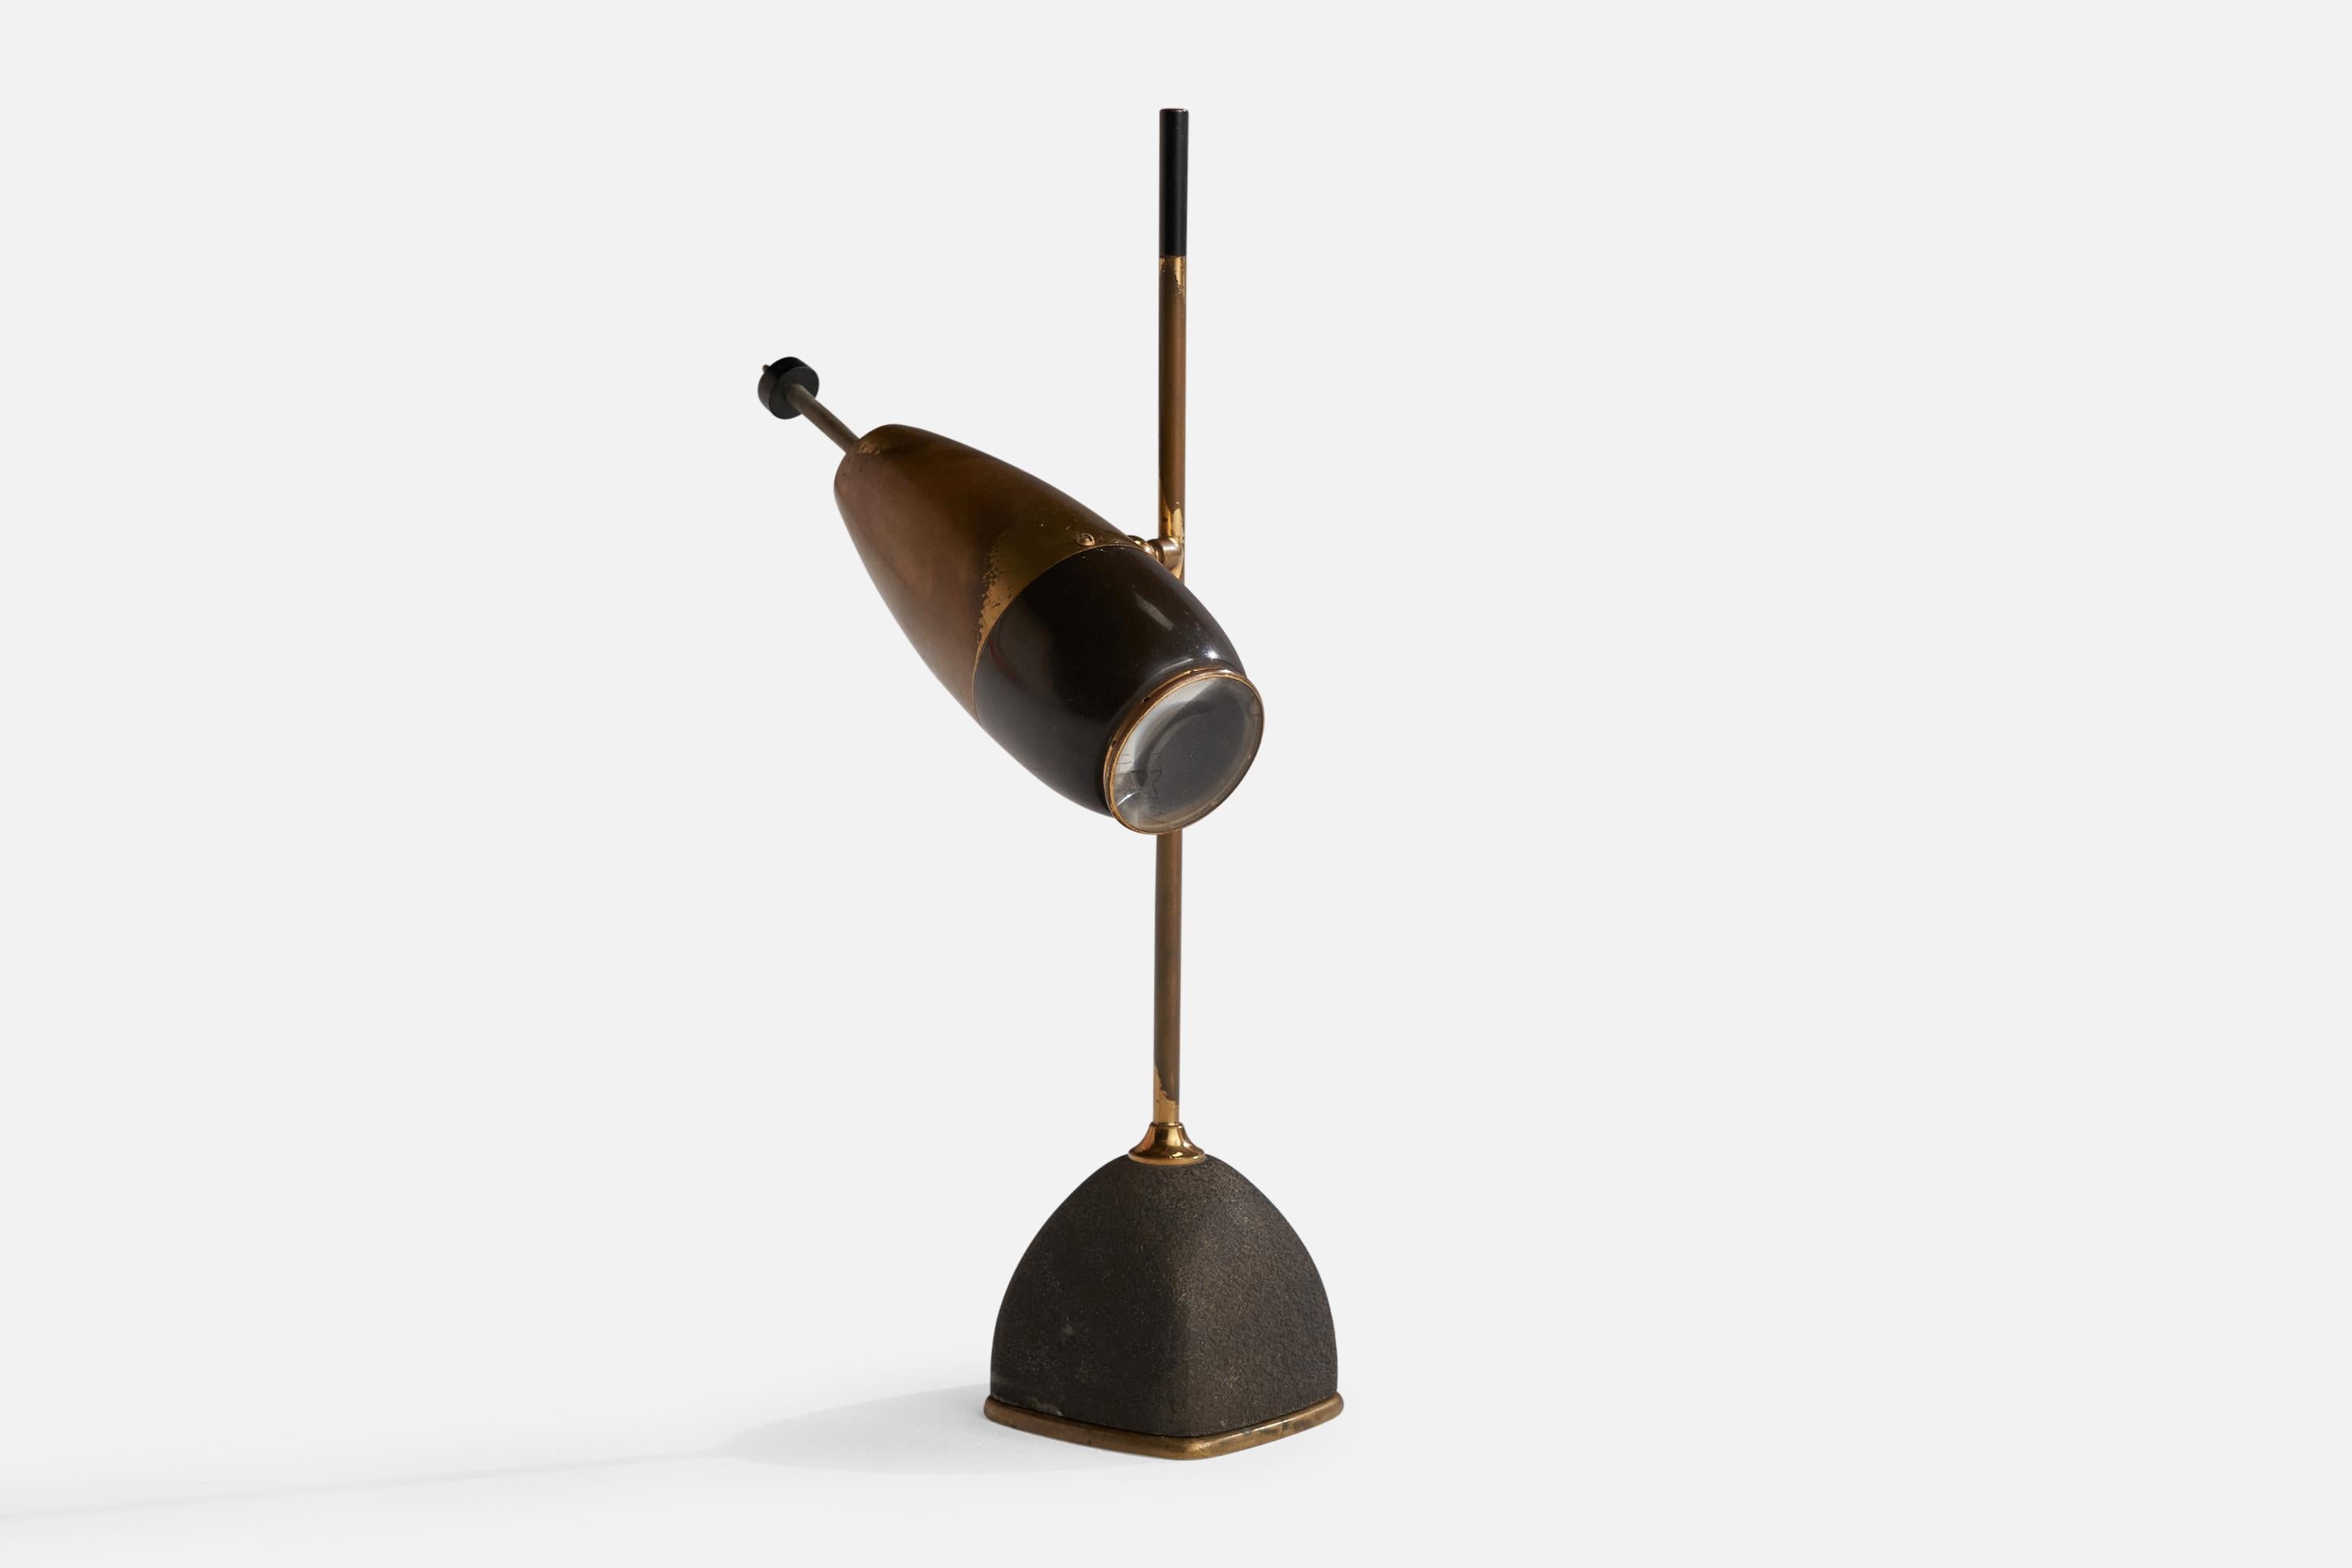 Eine verstellbare Tischleuchte aus Messing und schwarz lackiertem Metall, entworfen von Oscar Torlasco und hergestellt von Lumi, Mailand, Italien, 1950er Jahre.

Gesamtabmessungen (Zoll): 14,5